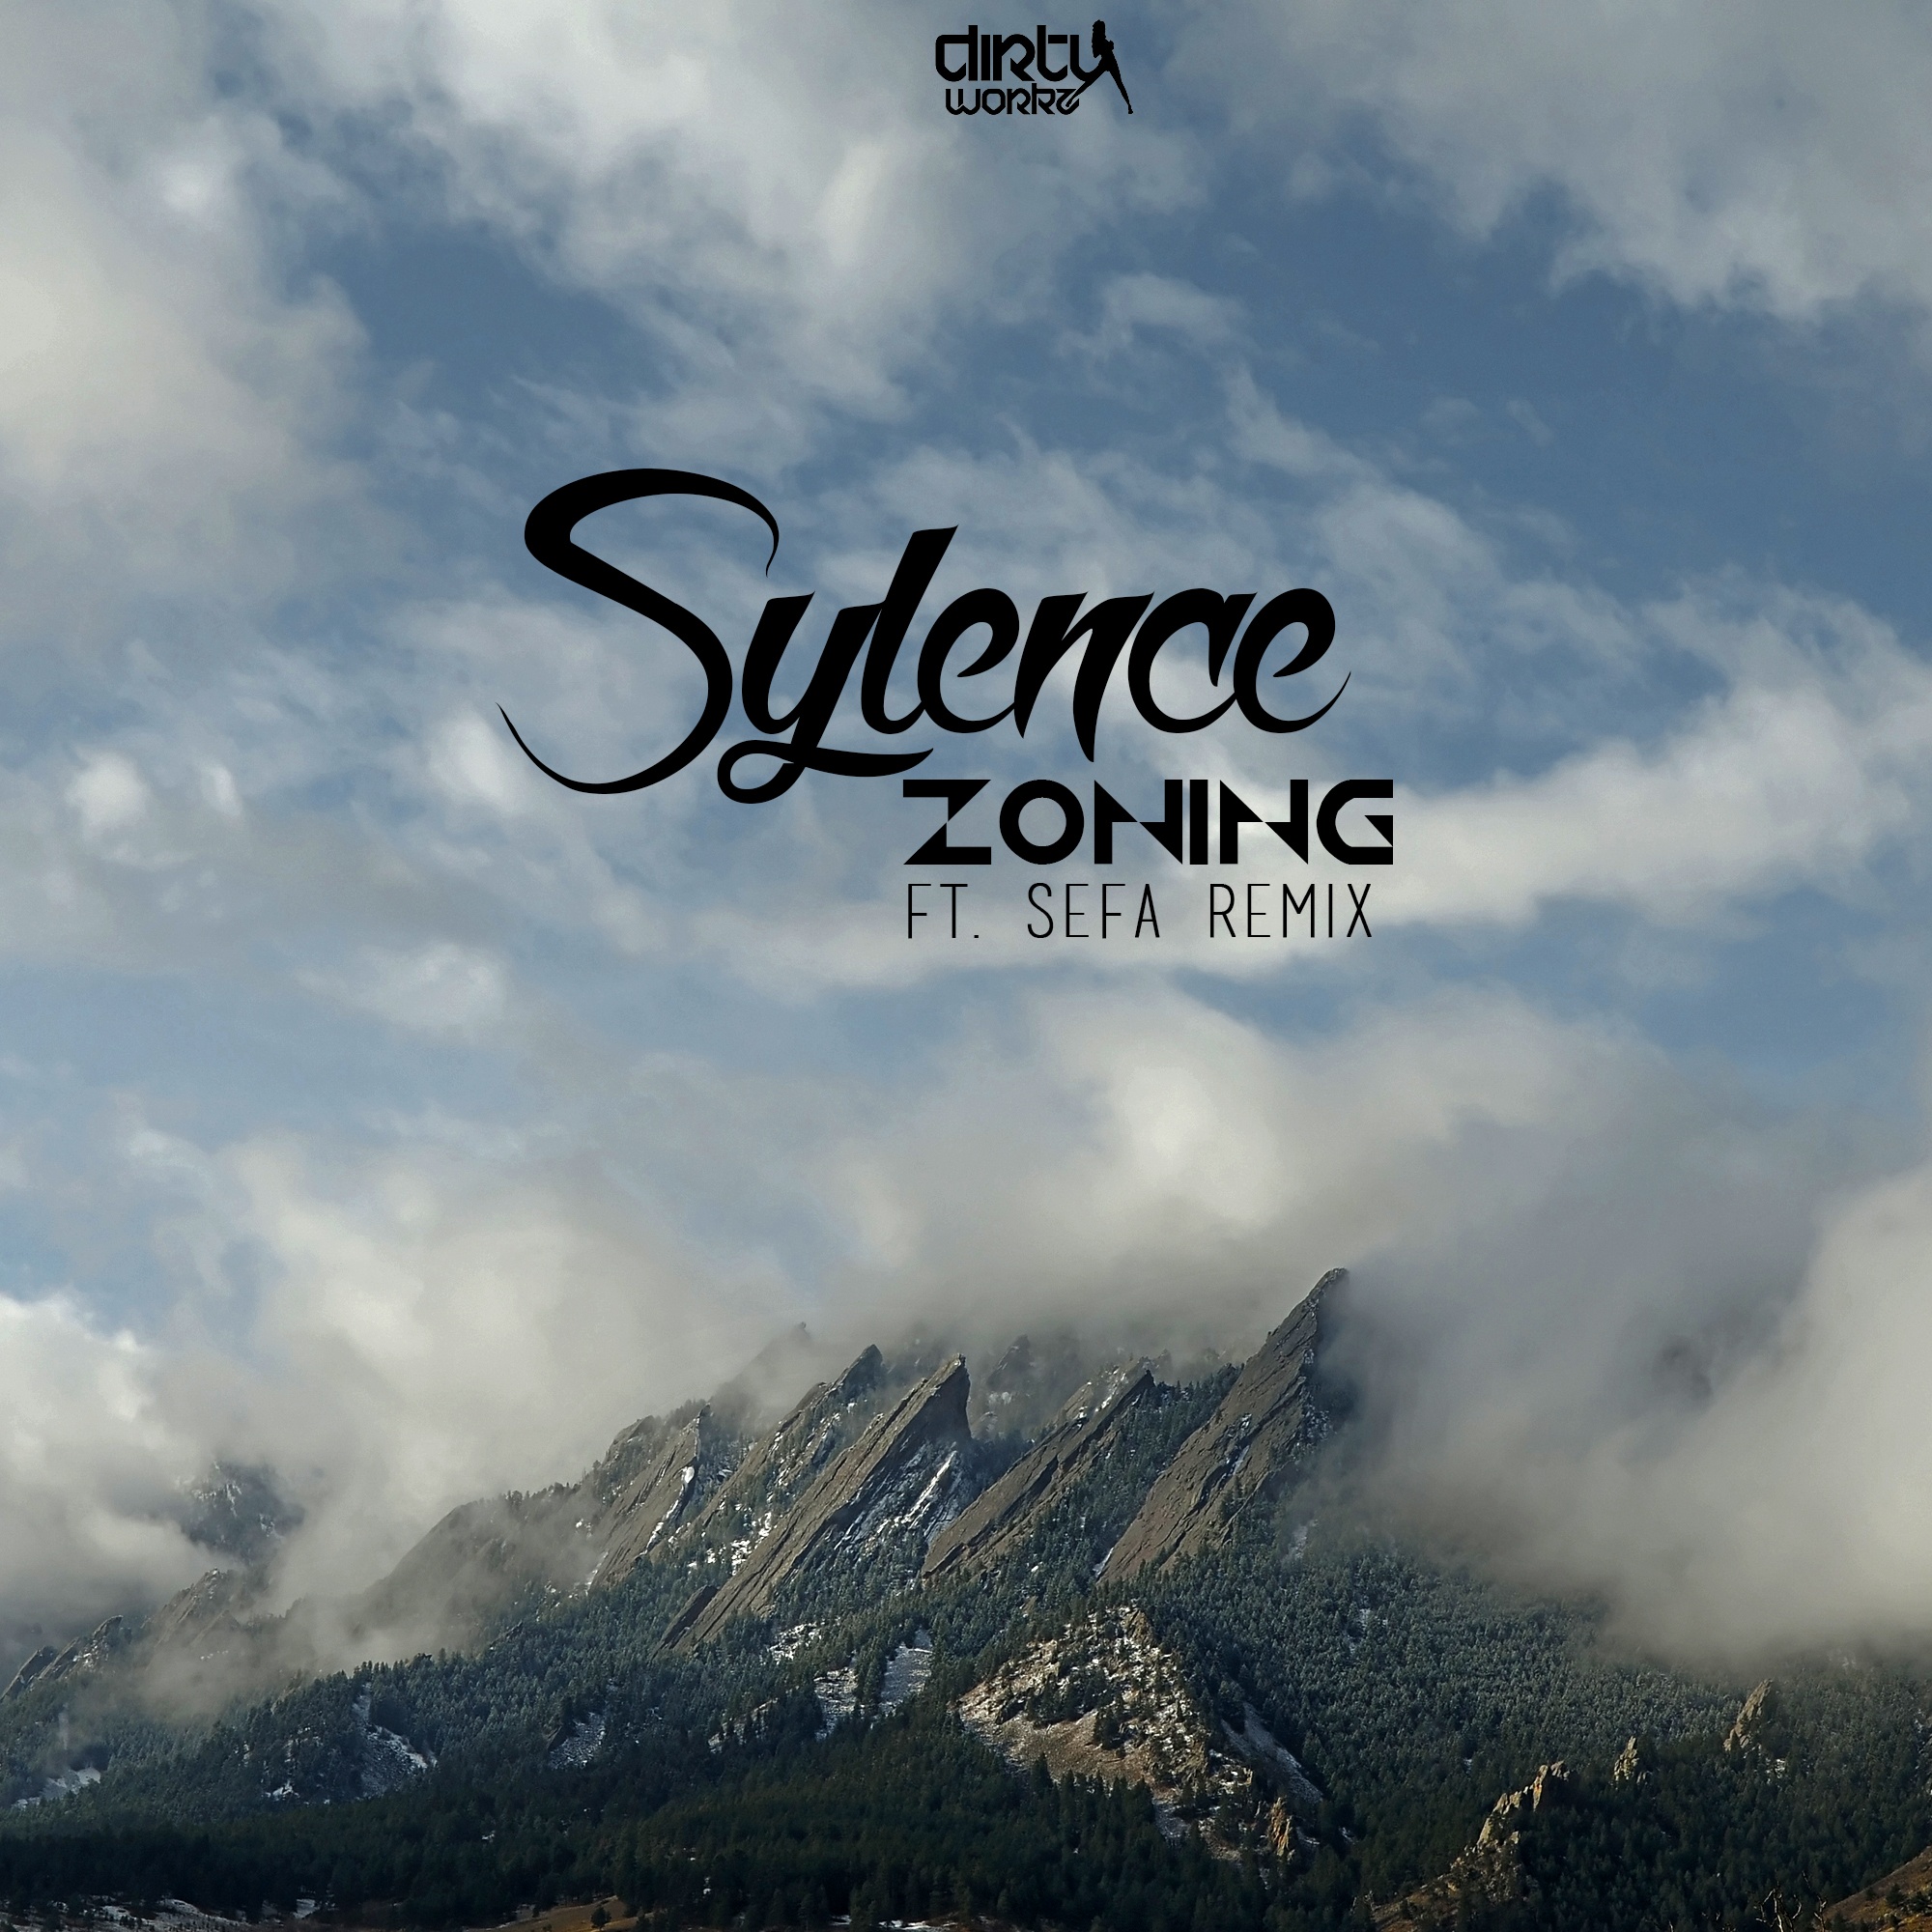 Zoning (Sefa Remix) (Extended Mix)